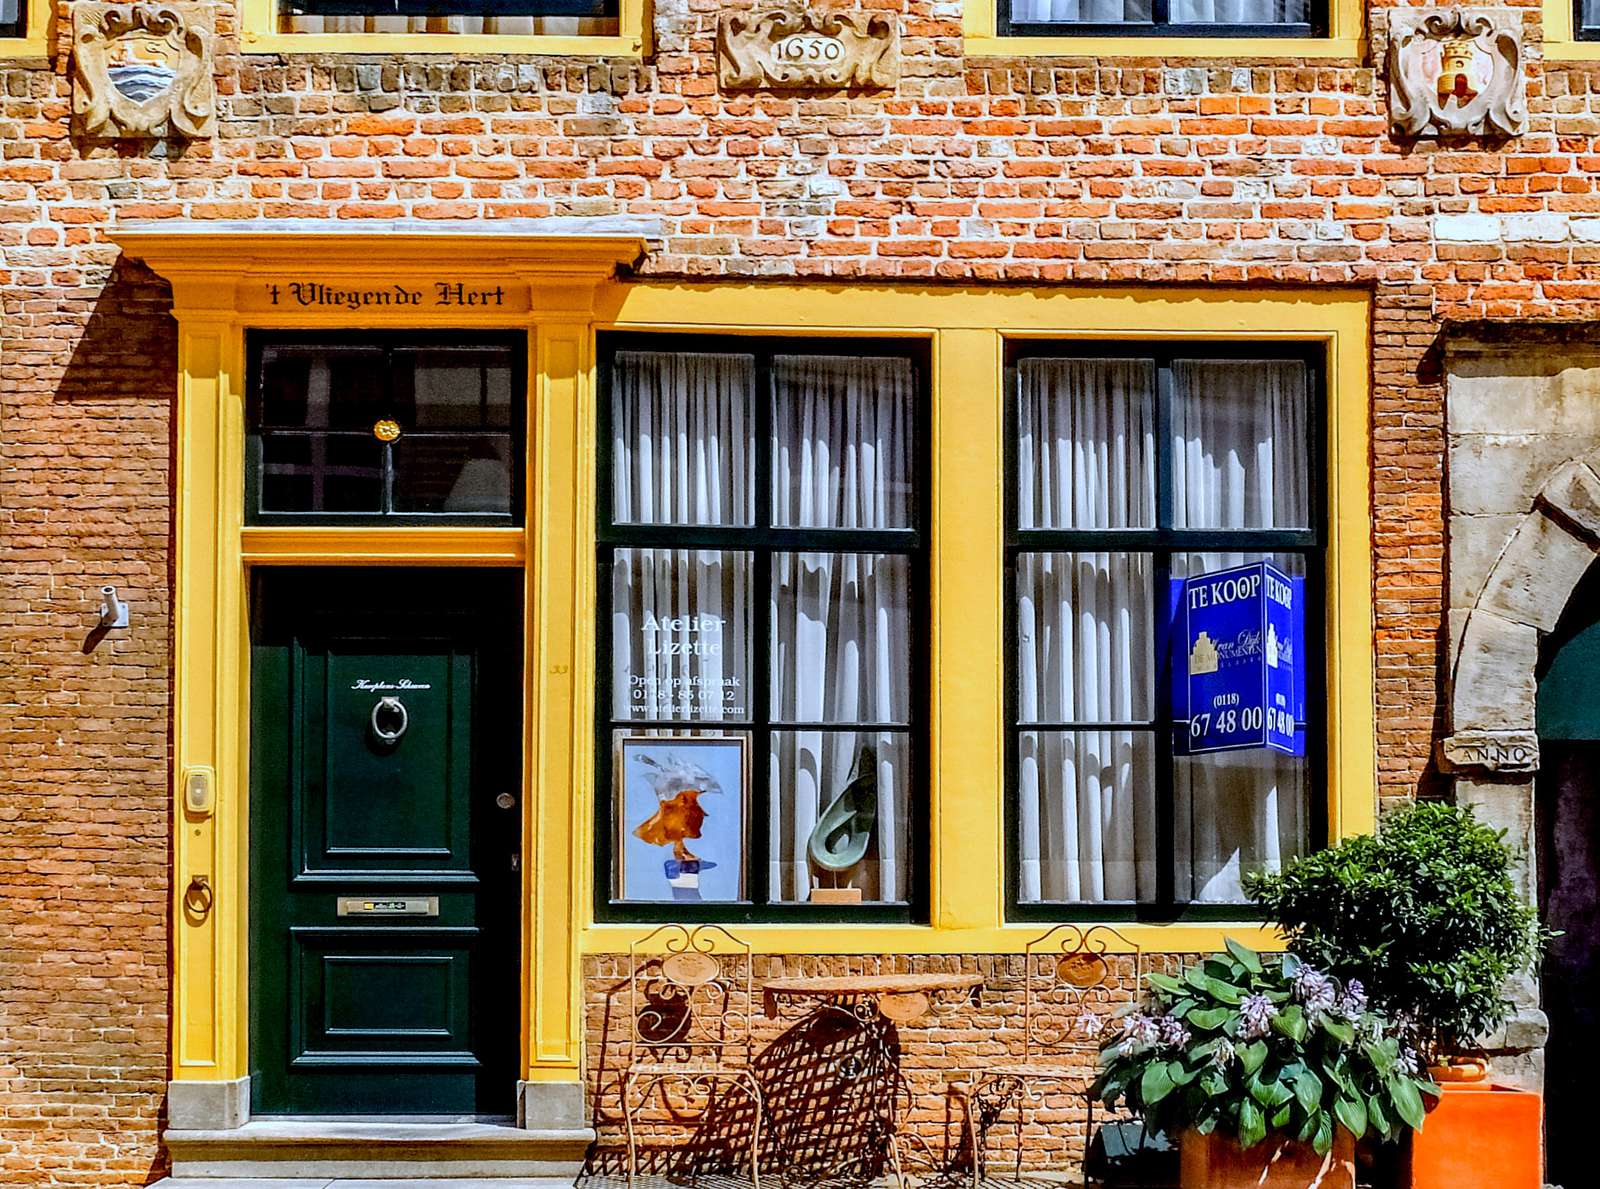 Fasada domu z XVII w. w Middelburgu (Holandia) puzzle online